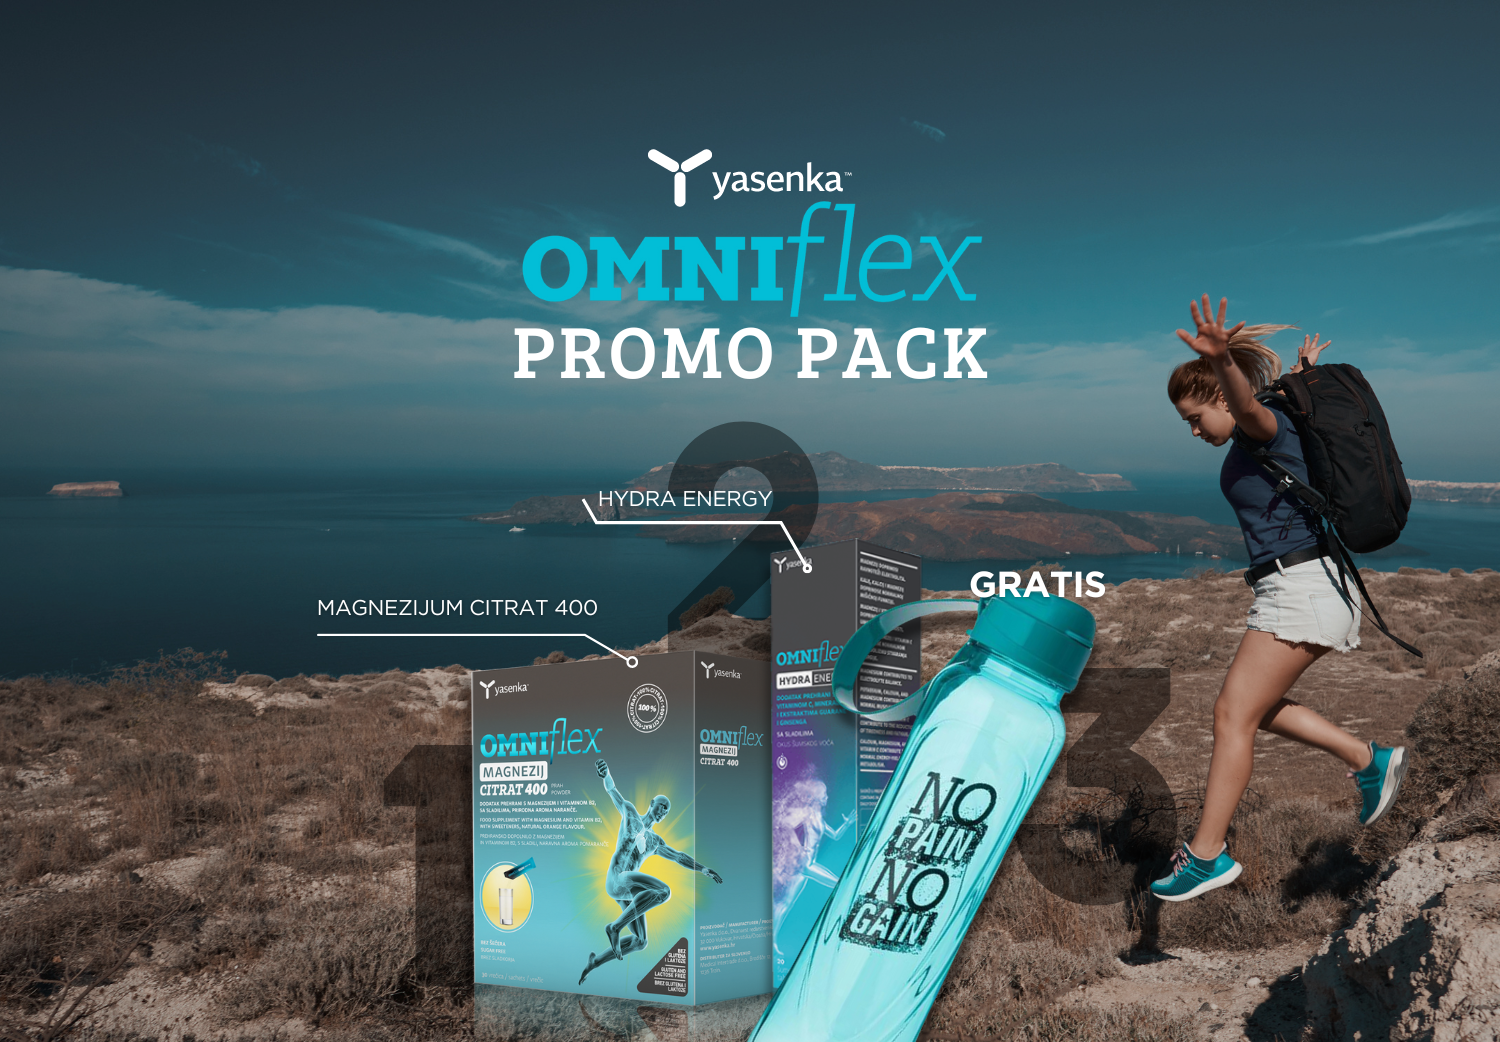 Omniflex promo paket za optimalnu podršku vašem zdravlju i vitalnosti.